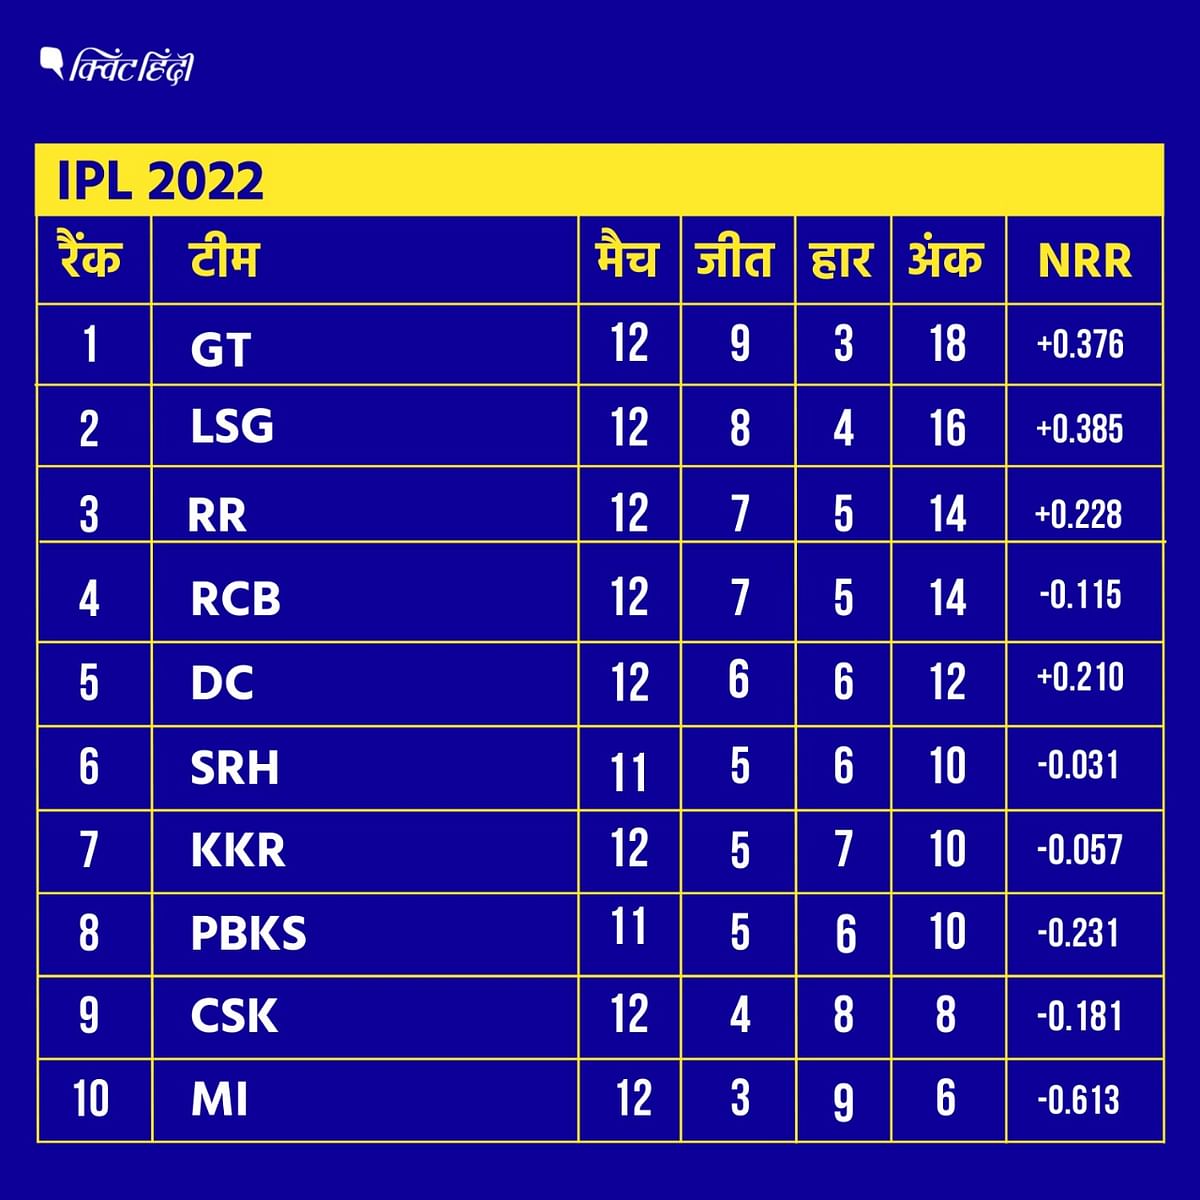 <div class="paragraphs"><p>IPL 2022 Points Table</p></div>